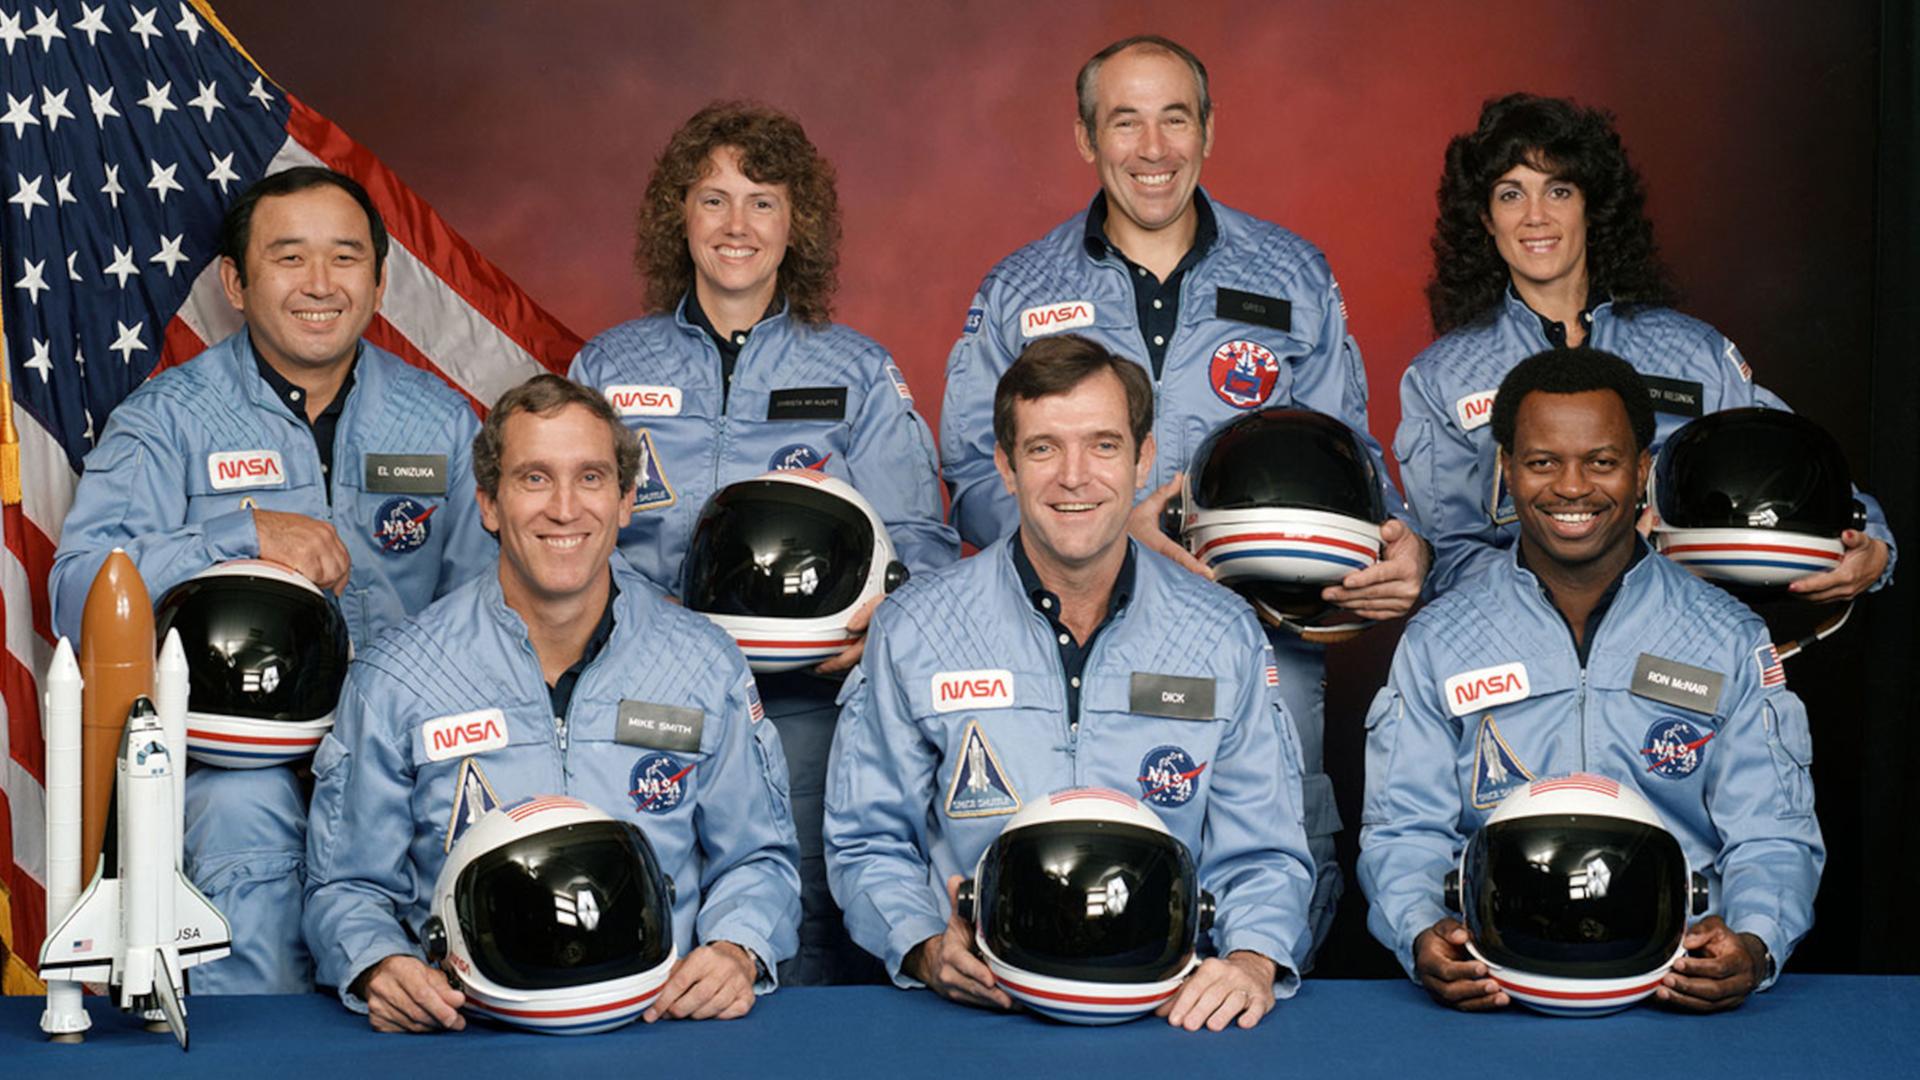 Die sieben Besatzungmitglieder der verunglückten Raumfähre Challenger posieren für ein Gruppenfoto mit Helmen und in Raumanzügen.